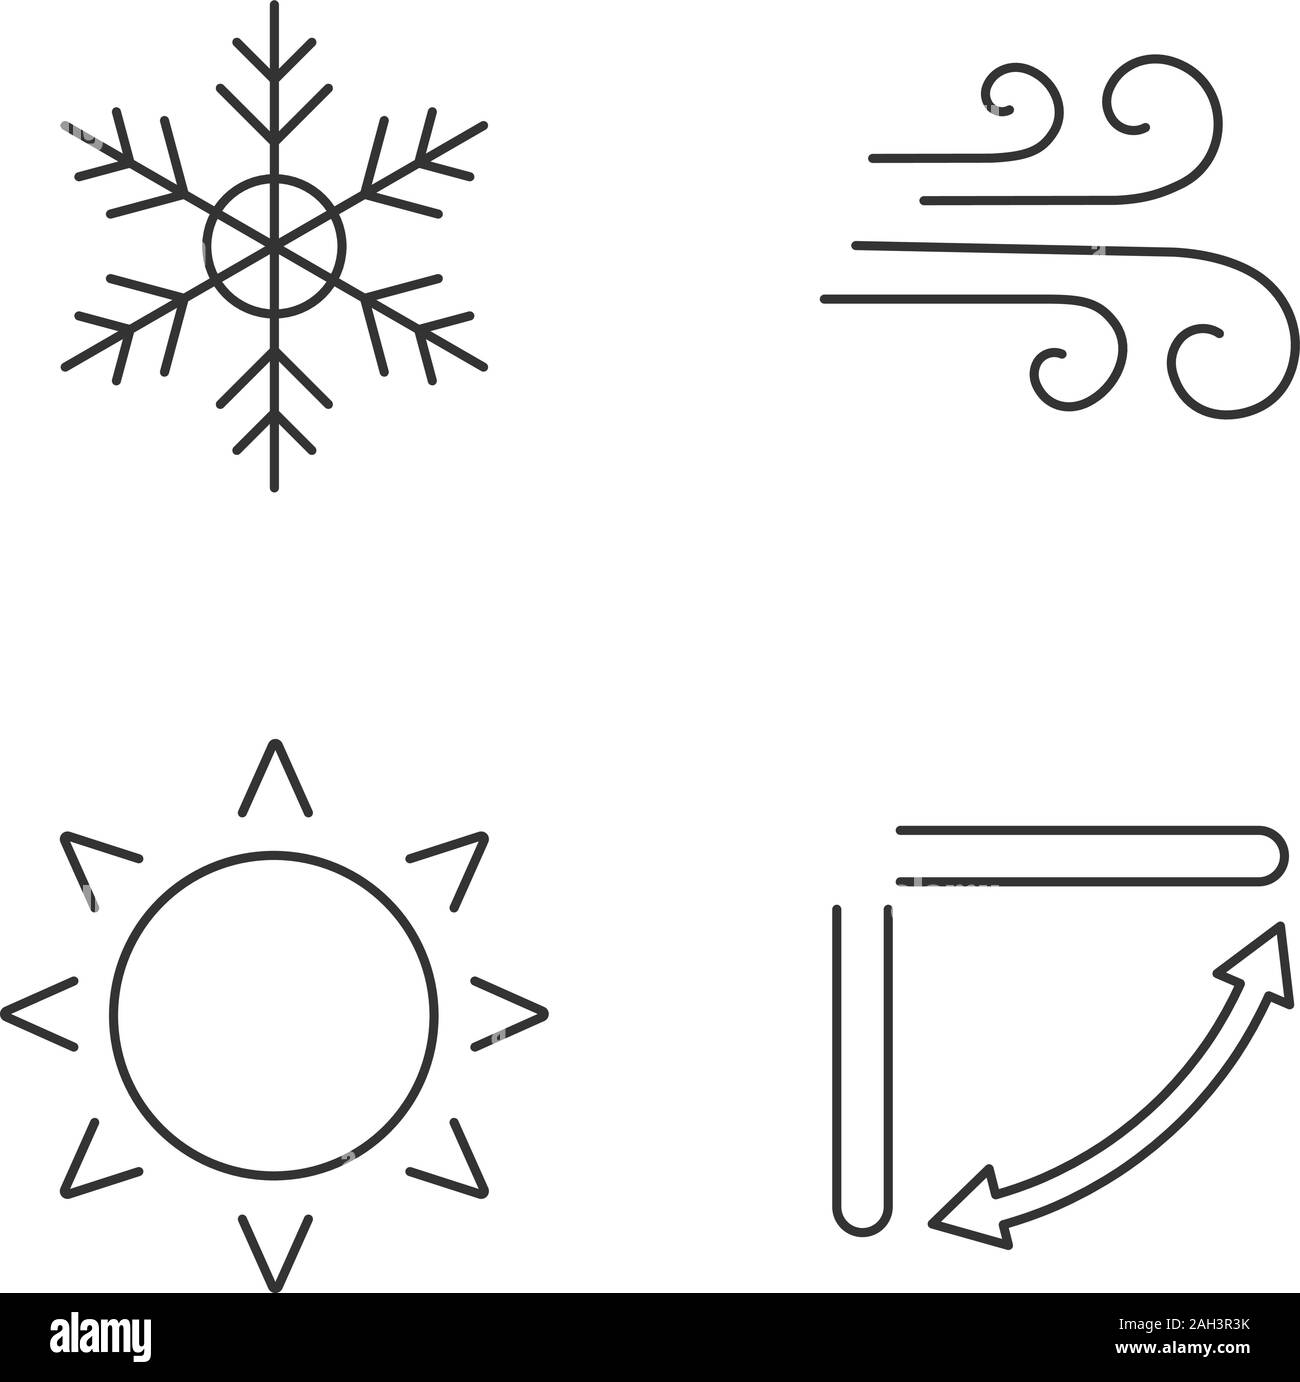 Aria condizionata lineare set di icone. Il simbolo del fiocco di neve, aria,  sun, condizionatore aria bocchette di ventilazione. Linea sottile simboli  di contorno. Vettore isolato illustrazioni di contorno Immagine e  Vettoriale -